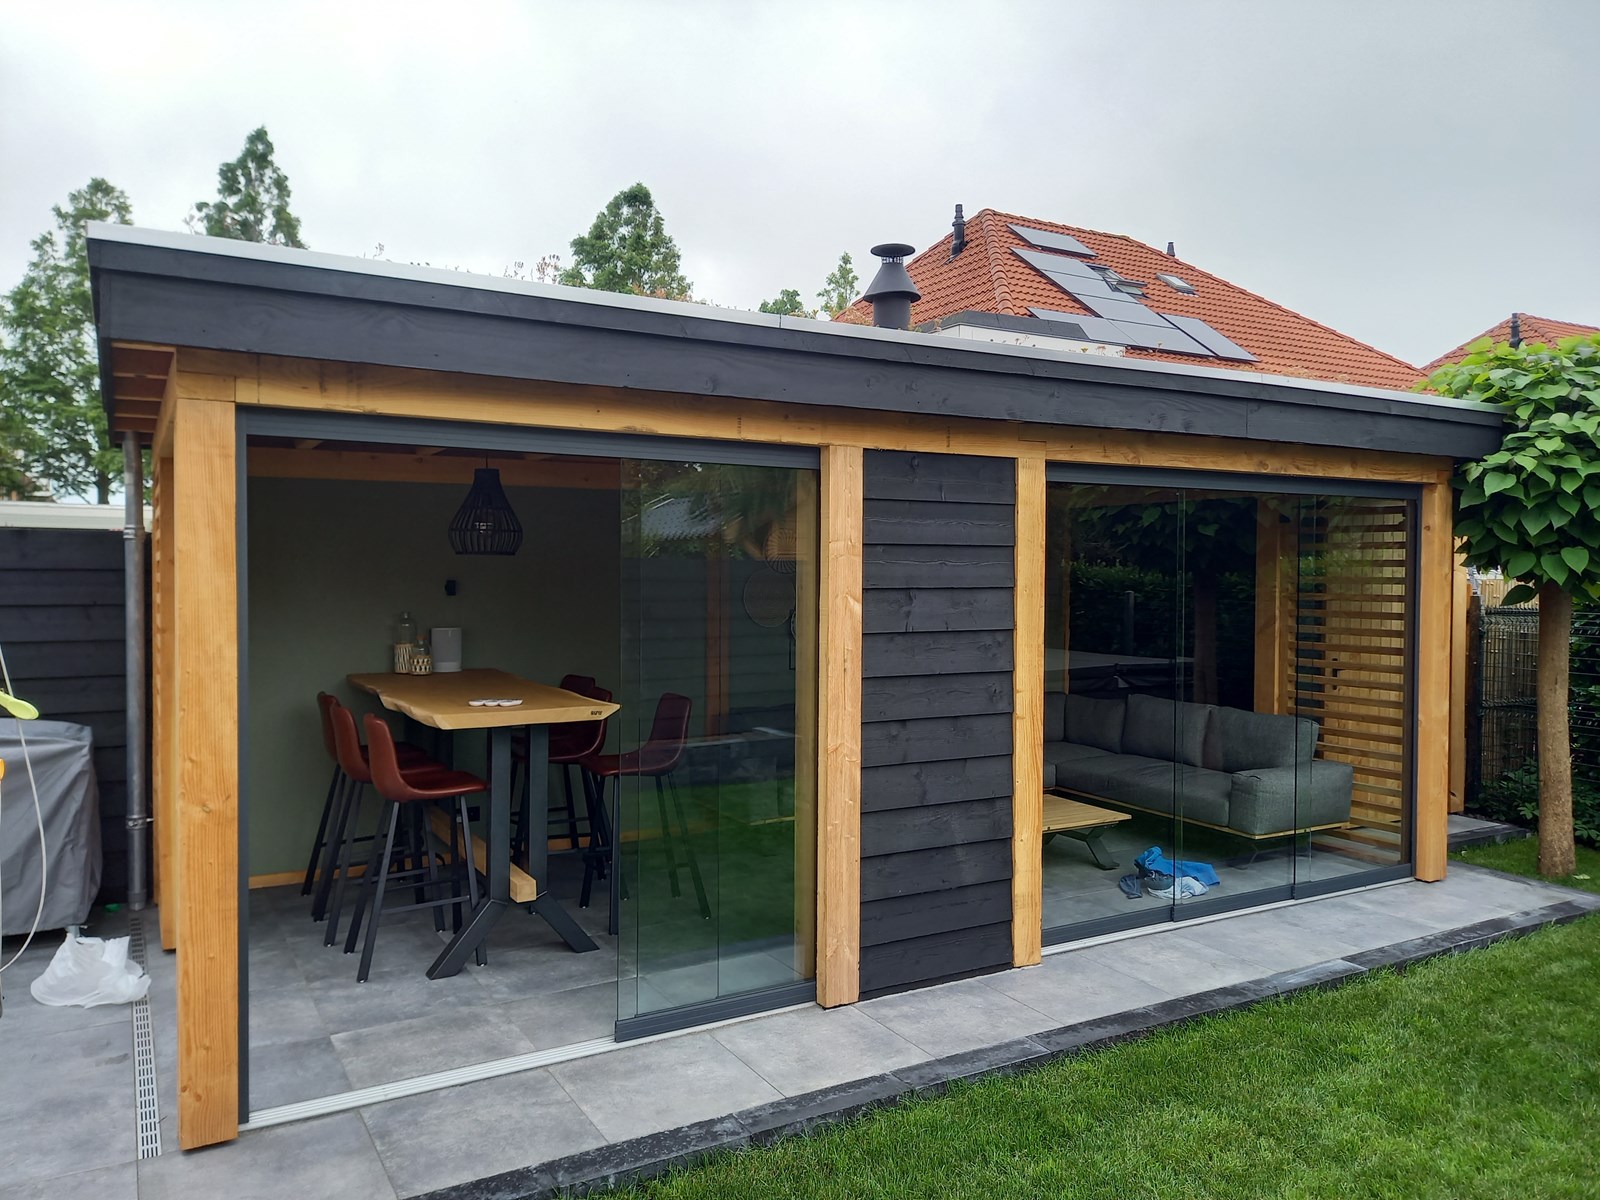 Aandringen Verdraaiing Componeren Luxe tuinhuis met sedum dak en gaskachel - Bergveranda.nl